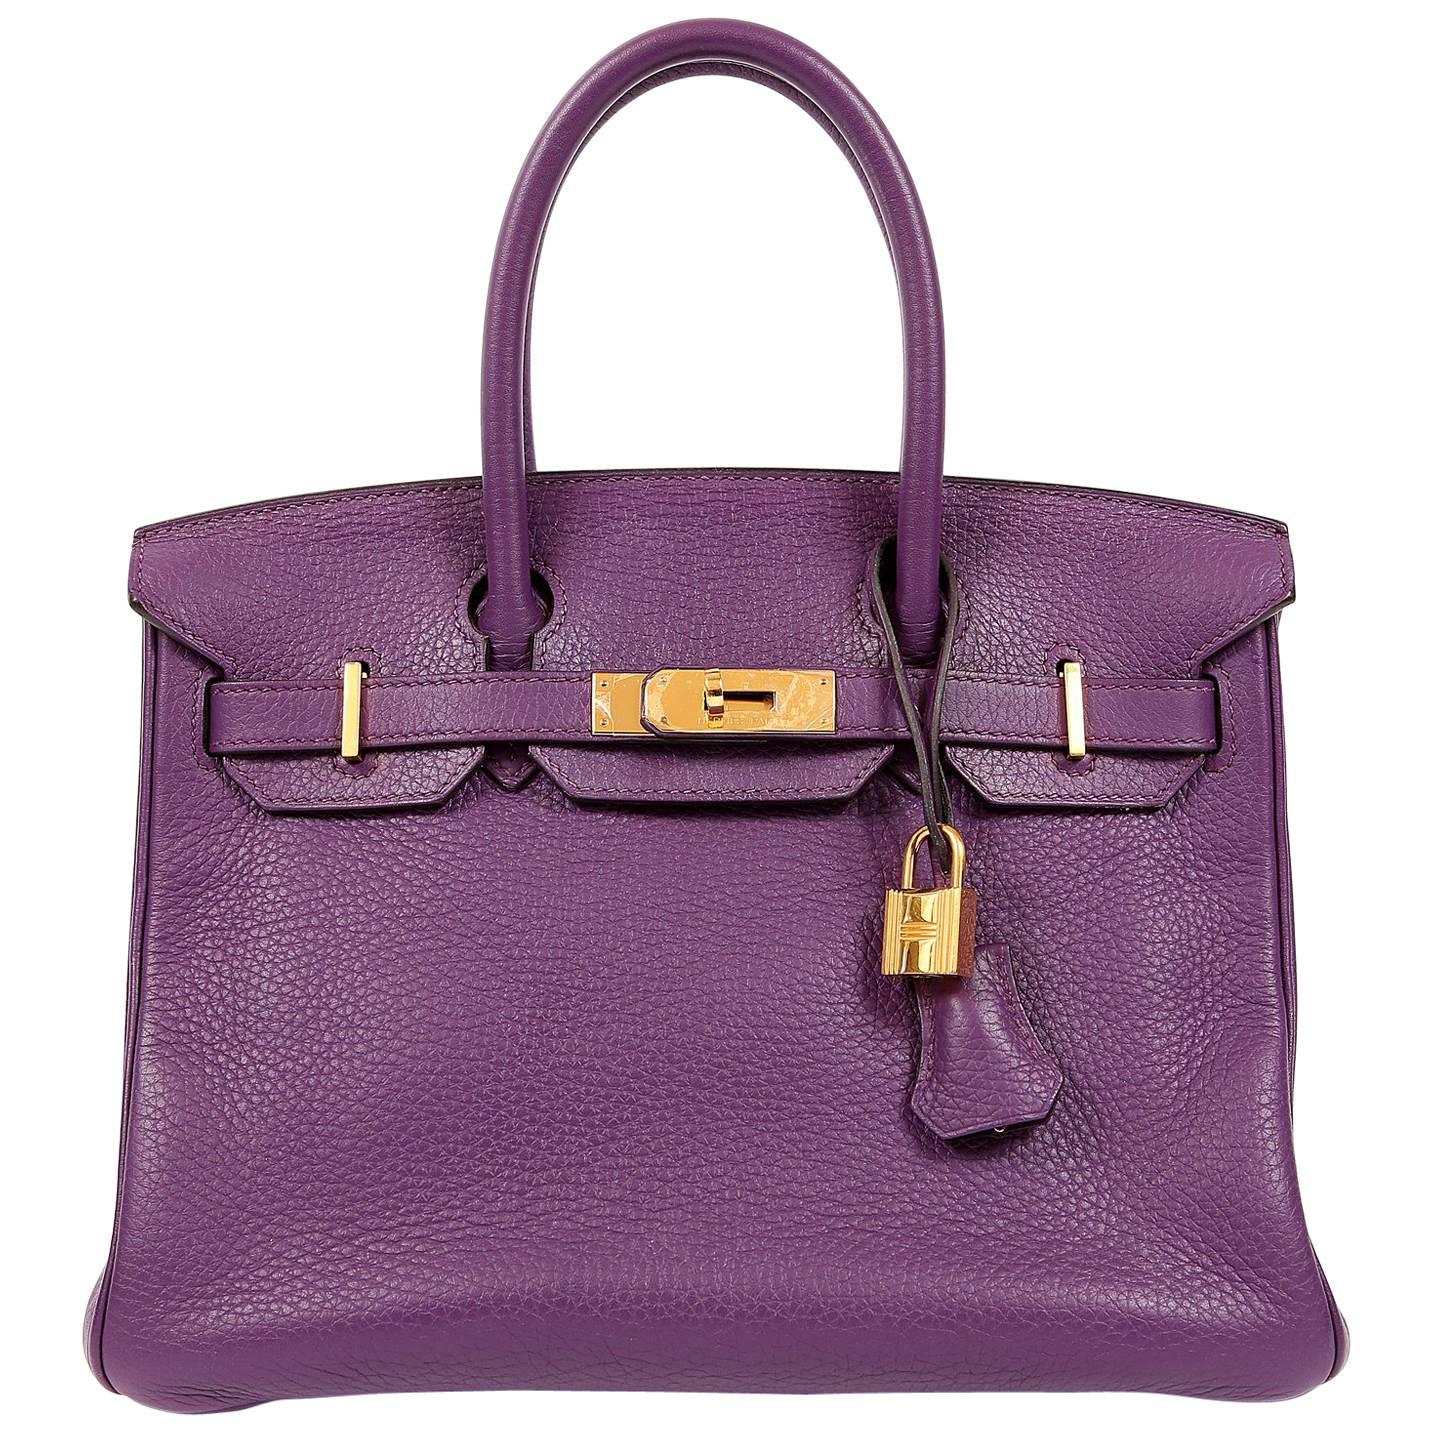 Hermes Ultra Violet Togo 30 cm Birkin Bag with GHW For Sale